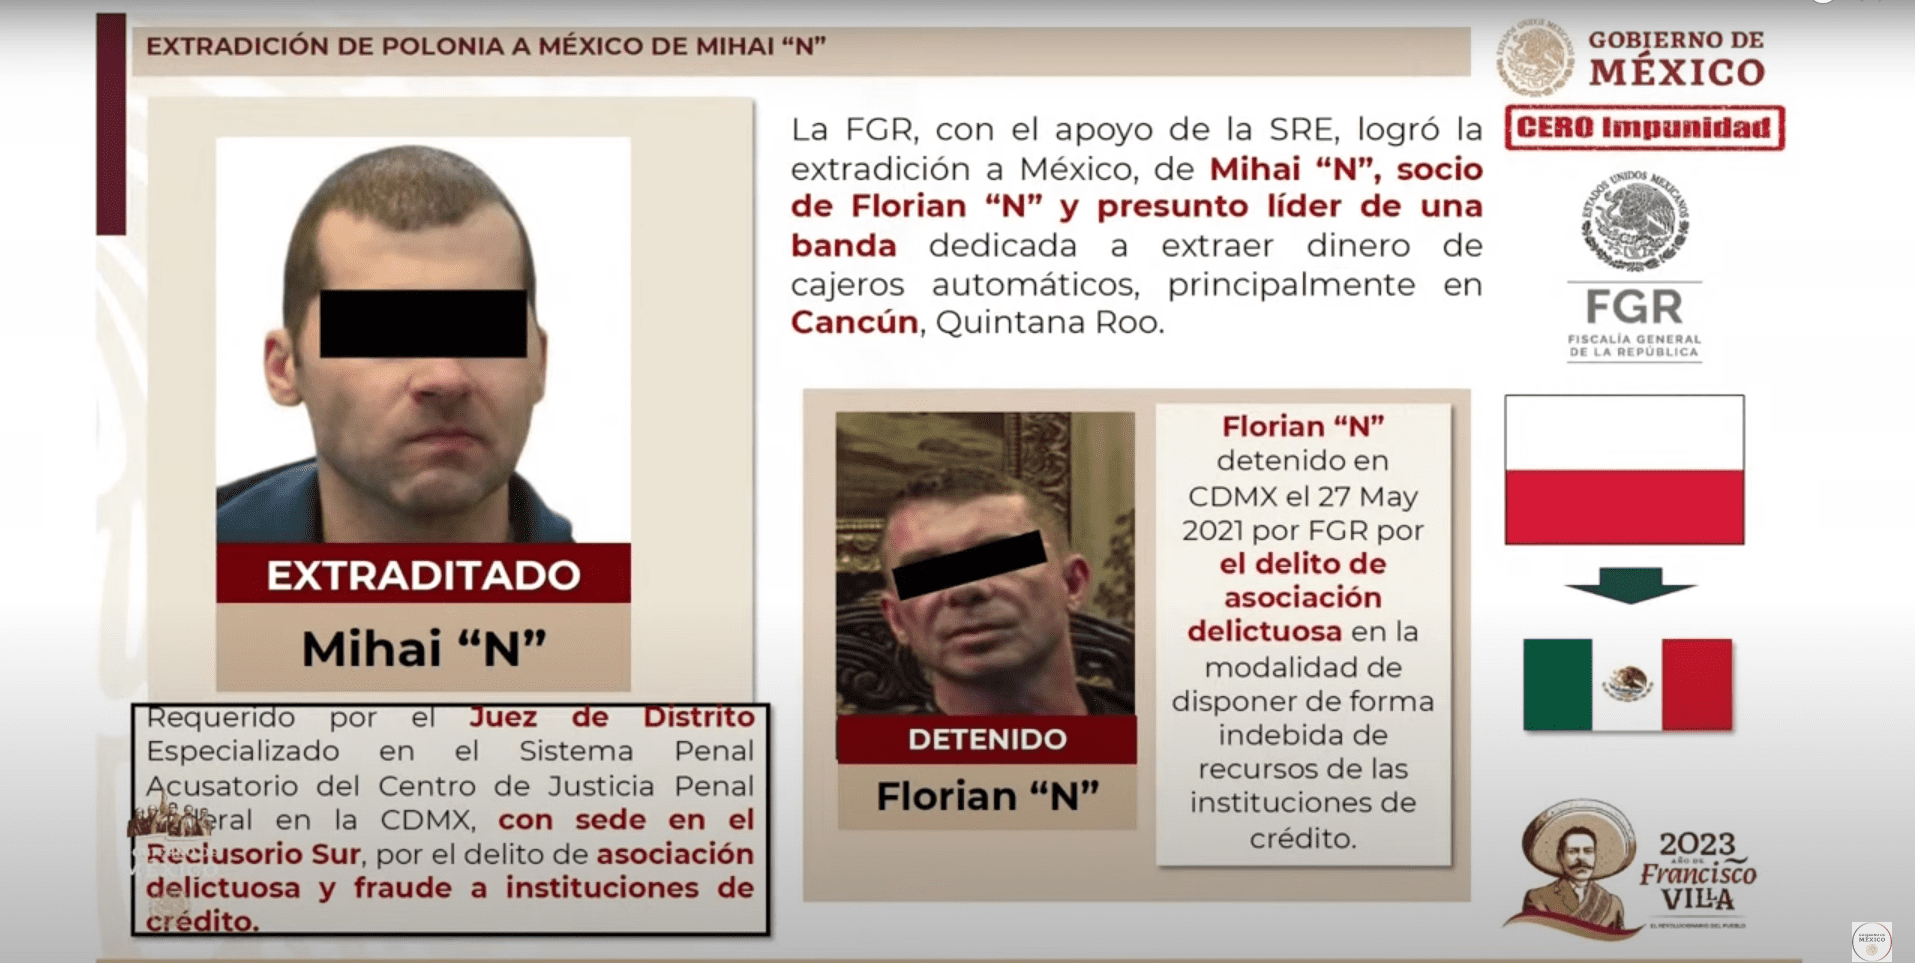 Extraditan de Polonia a México a líder de Mafia Rumana Mihaia “N”